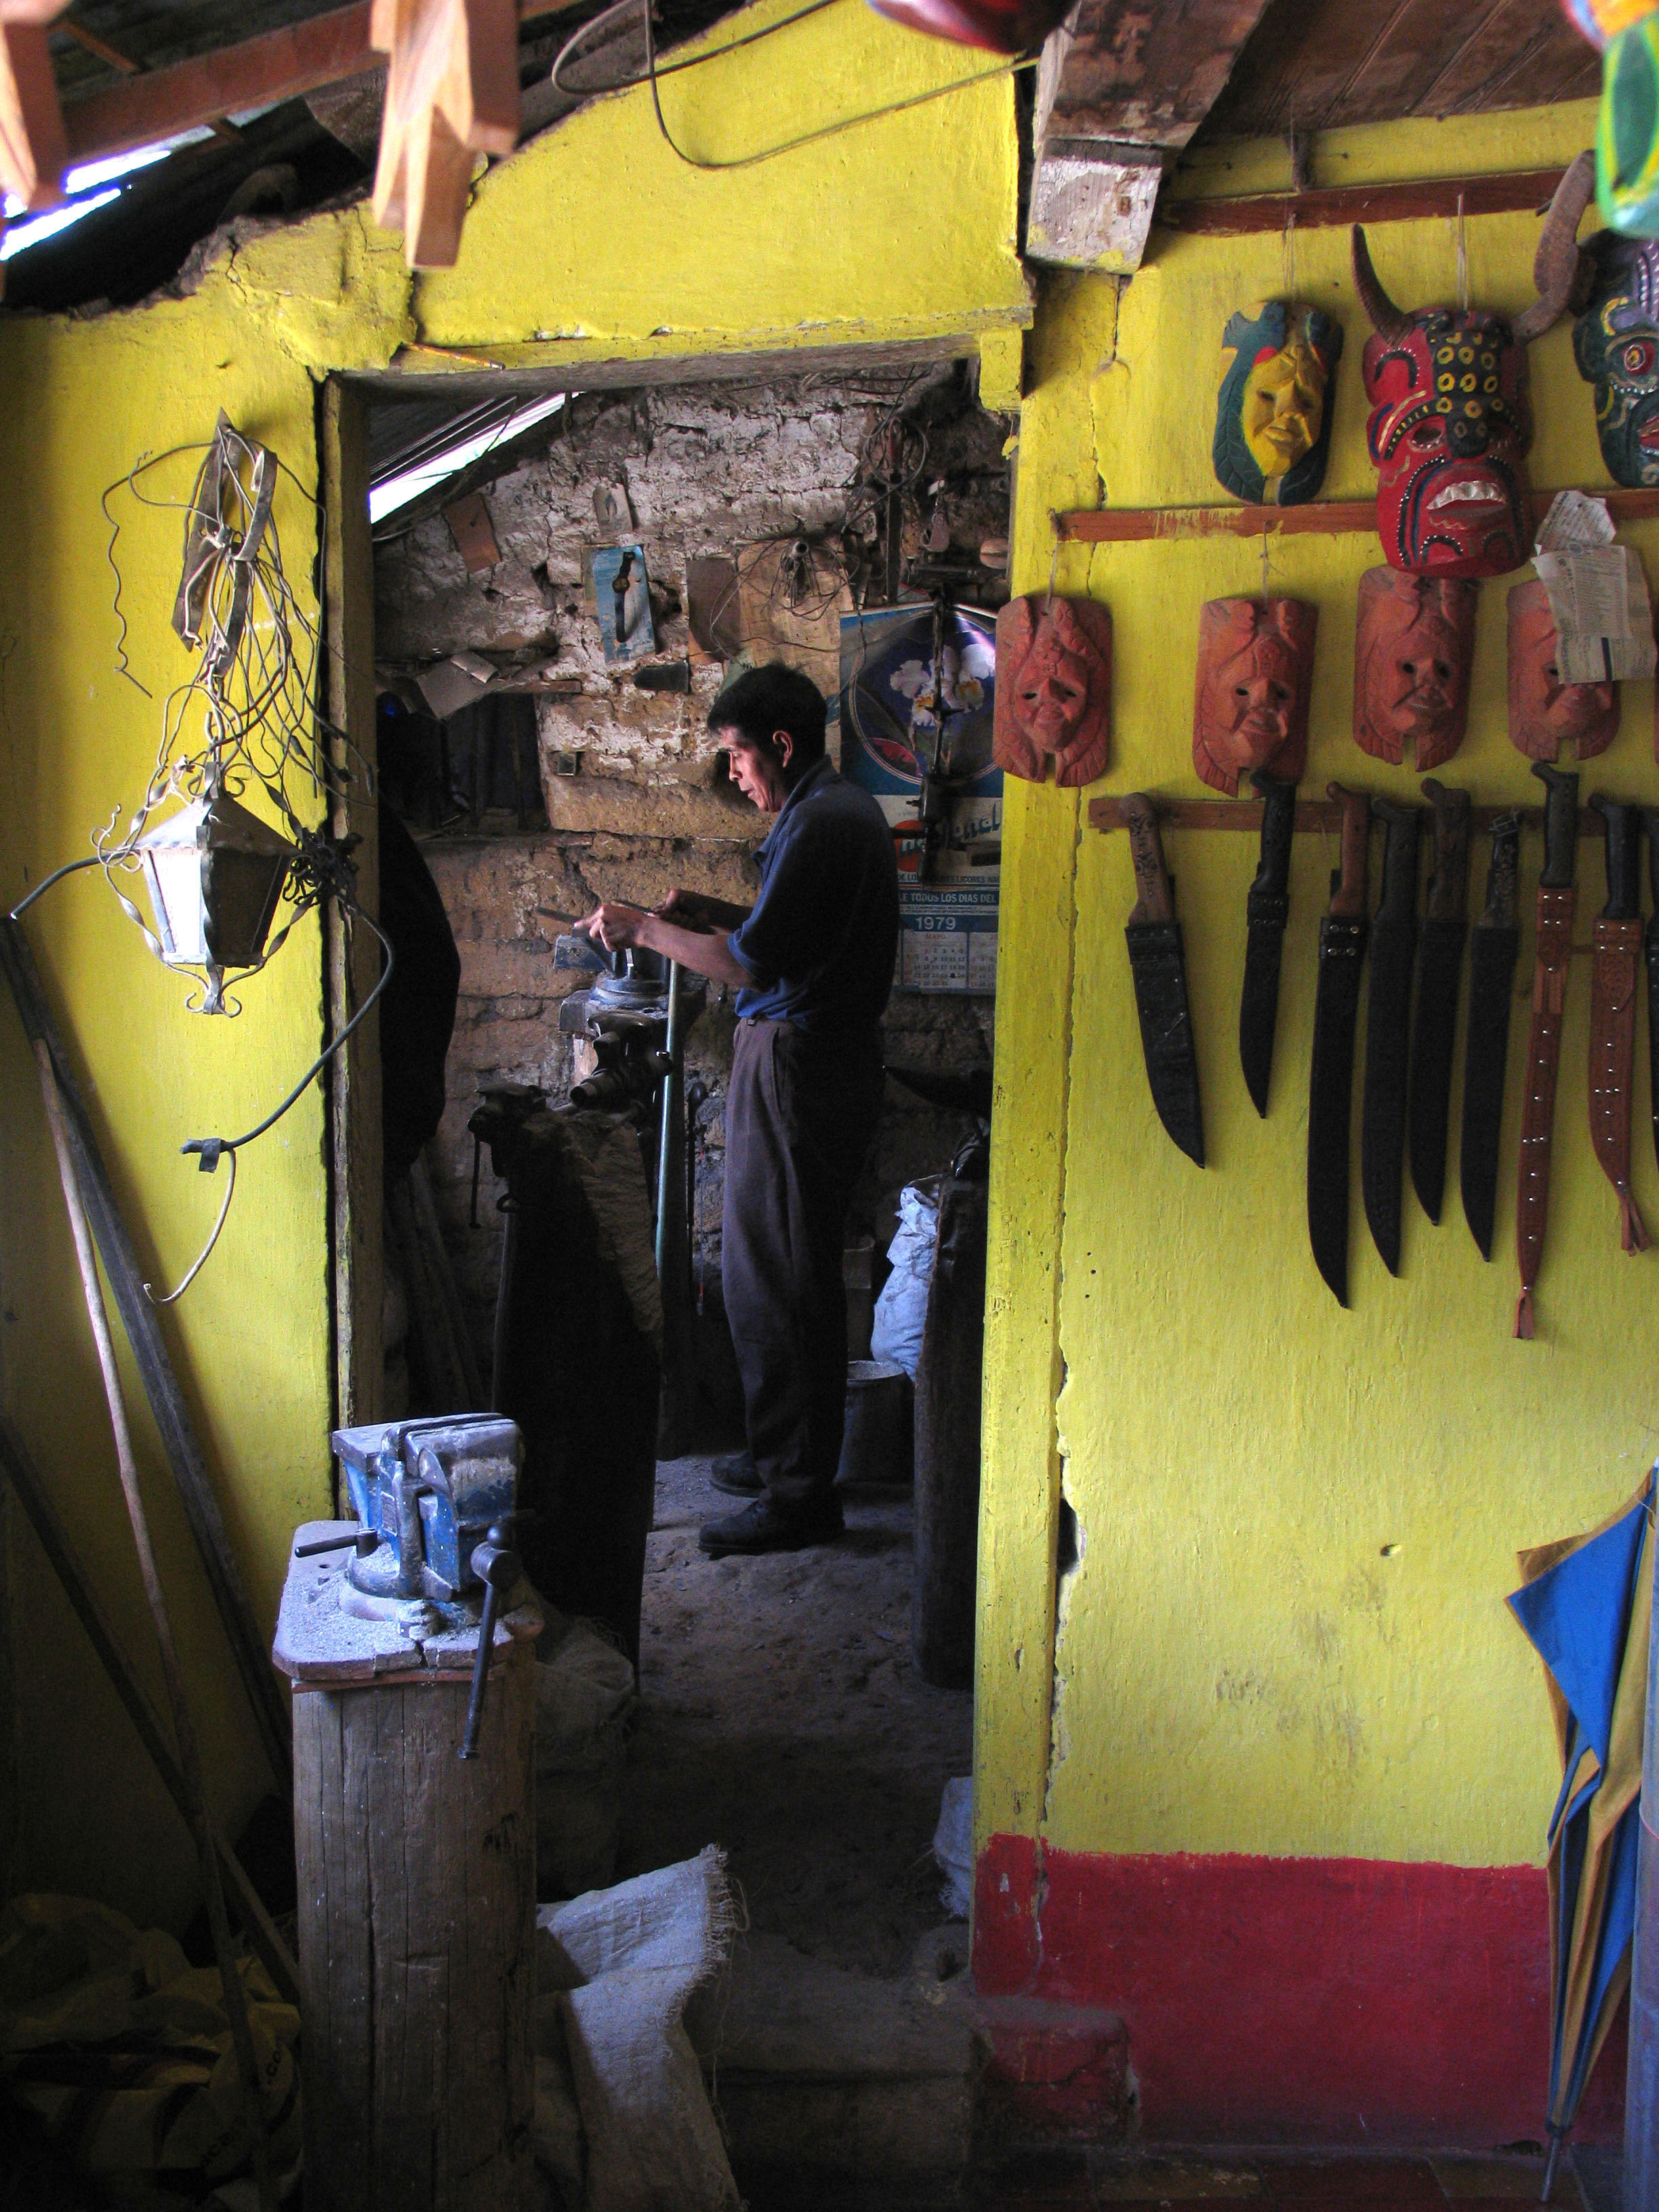 Knife maker, Chichicastenango, Guatemala